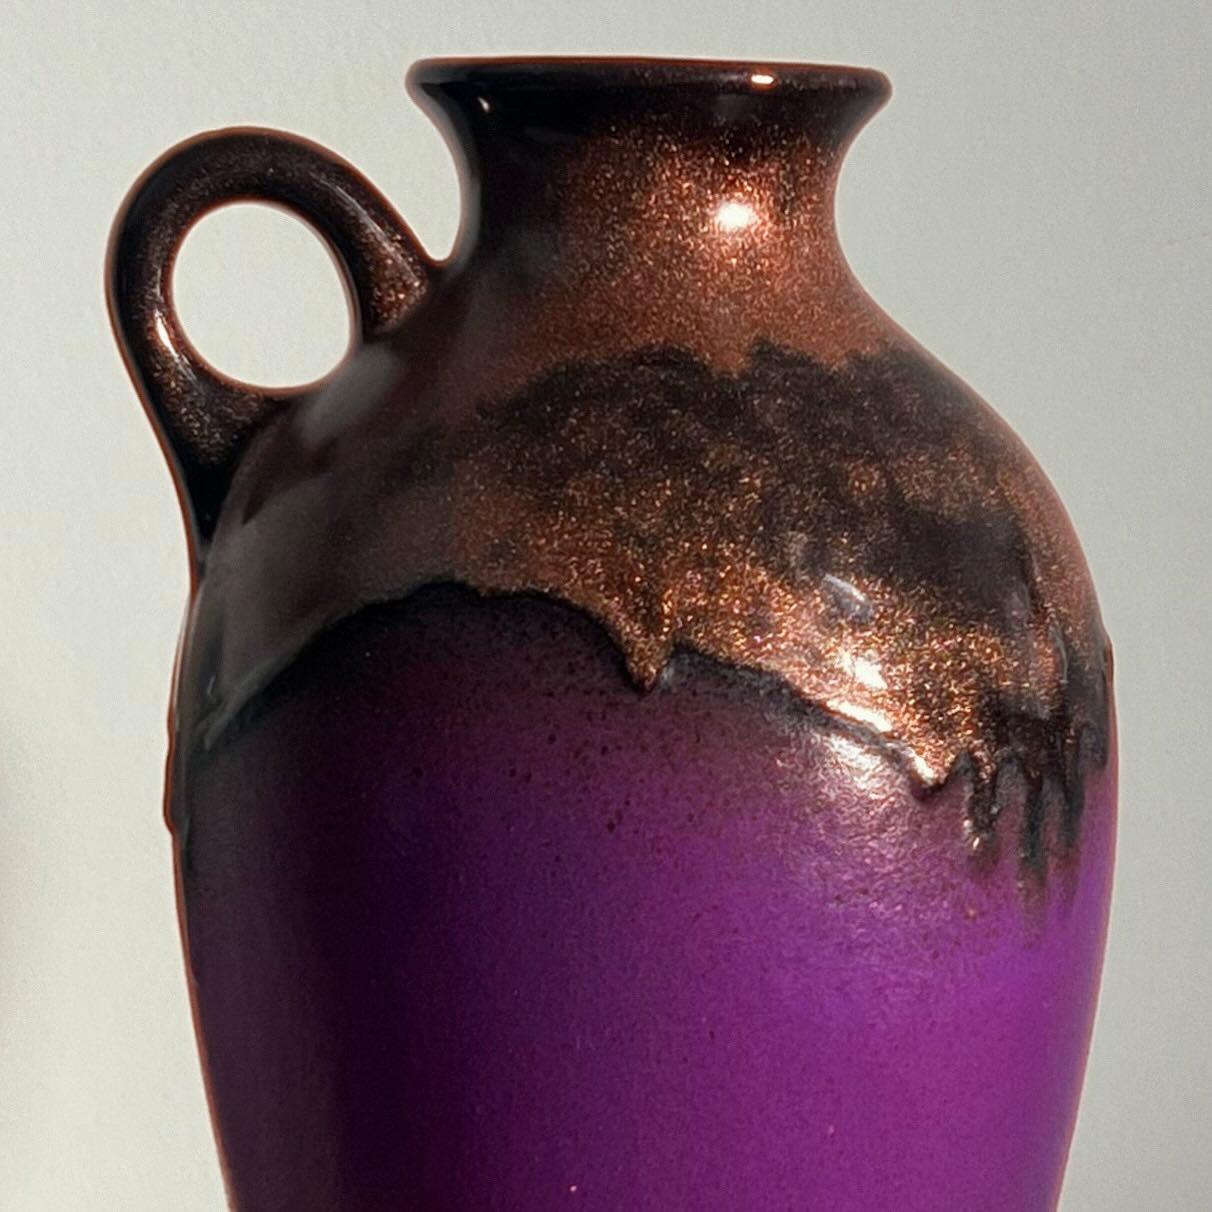 Un grand récipient en céramique du milieu du siècle en violet électrique par Fohr Keramik, Allemagne de l'Ouest, années 1960. Un vase, une cruche, un pichet - à vous de choisir. Notez le filet de cuivre unique le long du col du récipient : À la fin